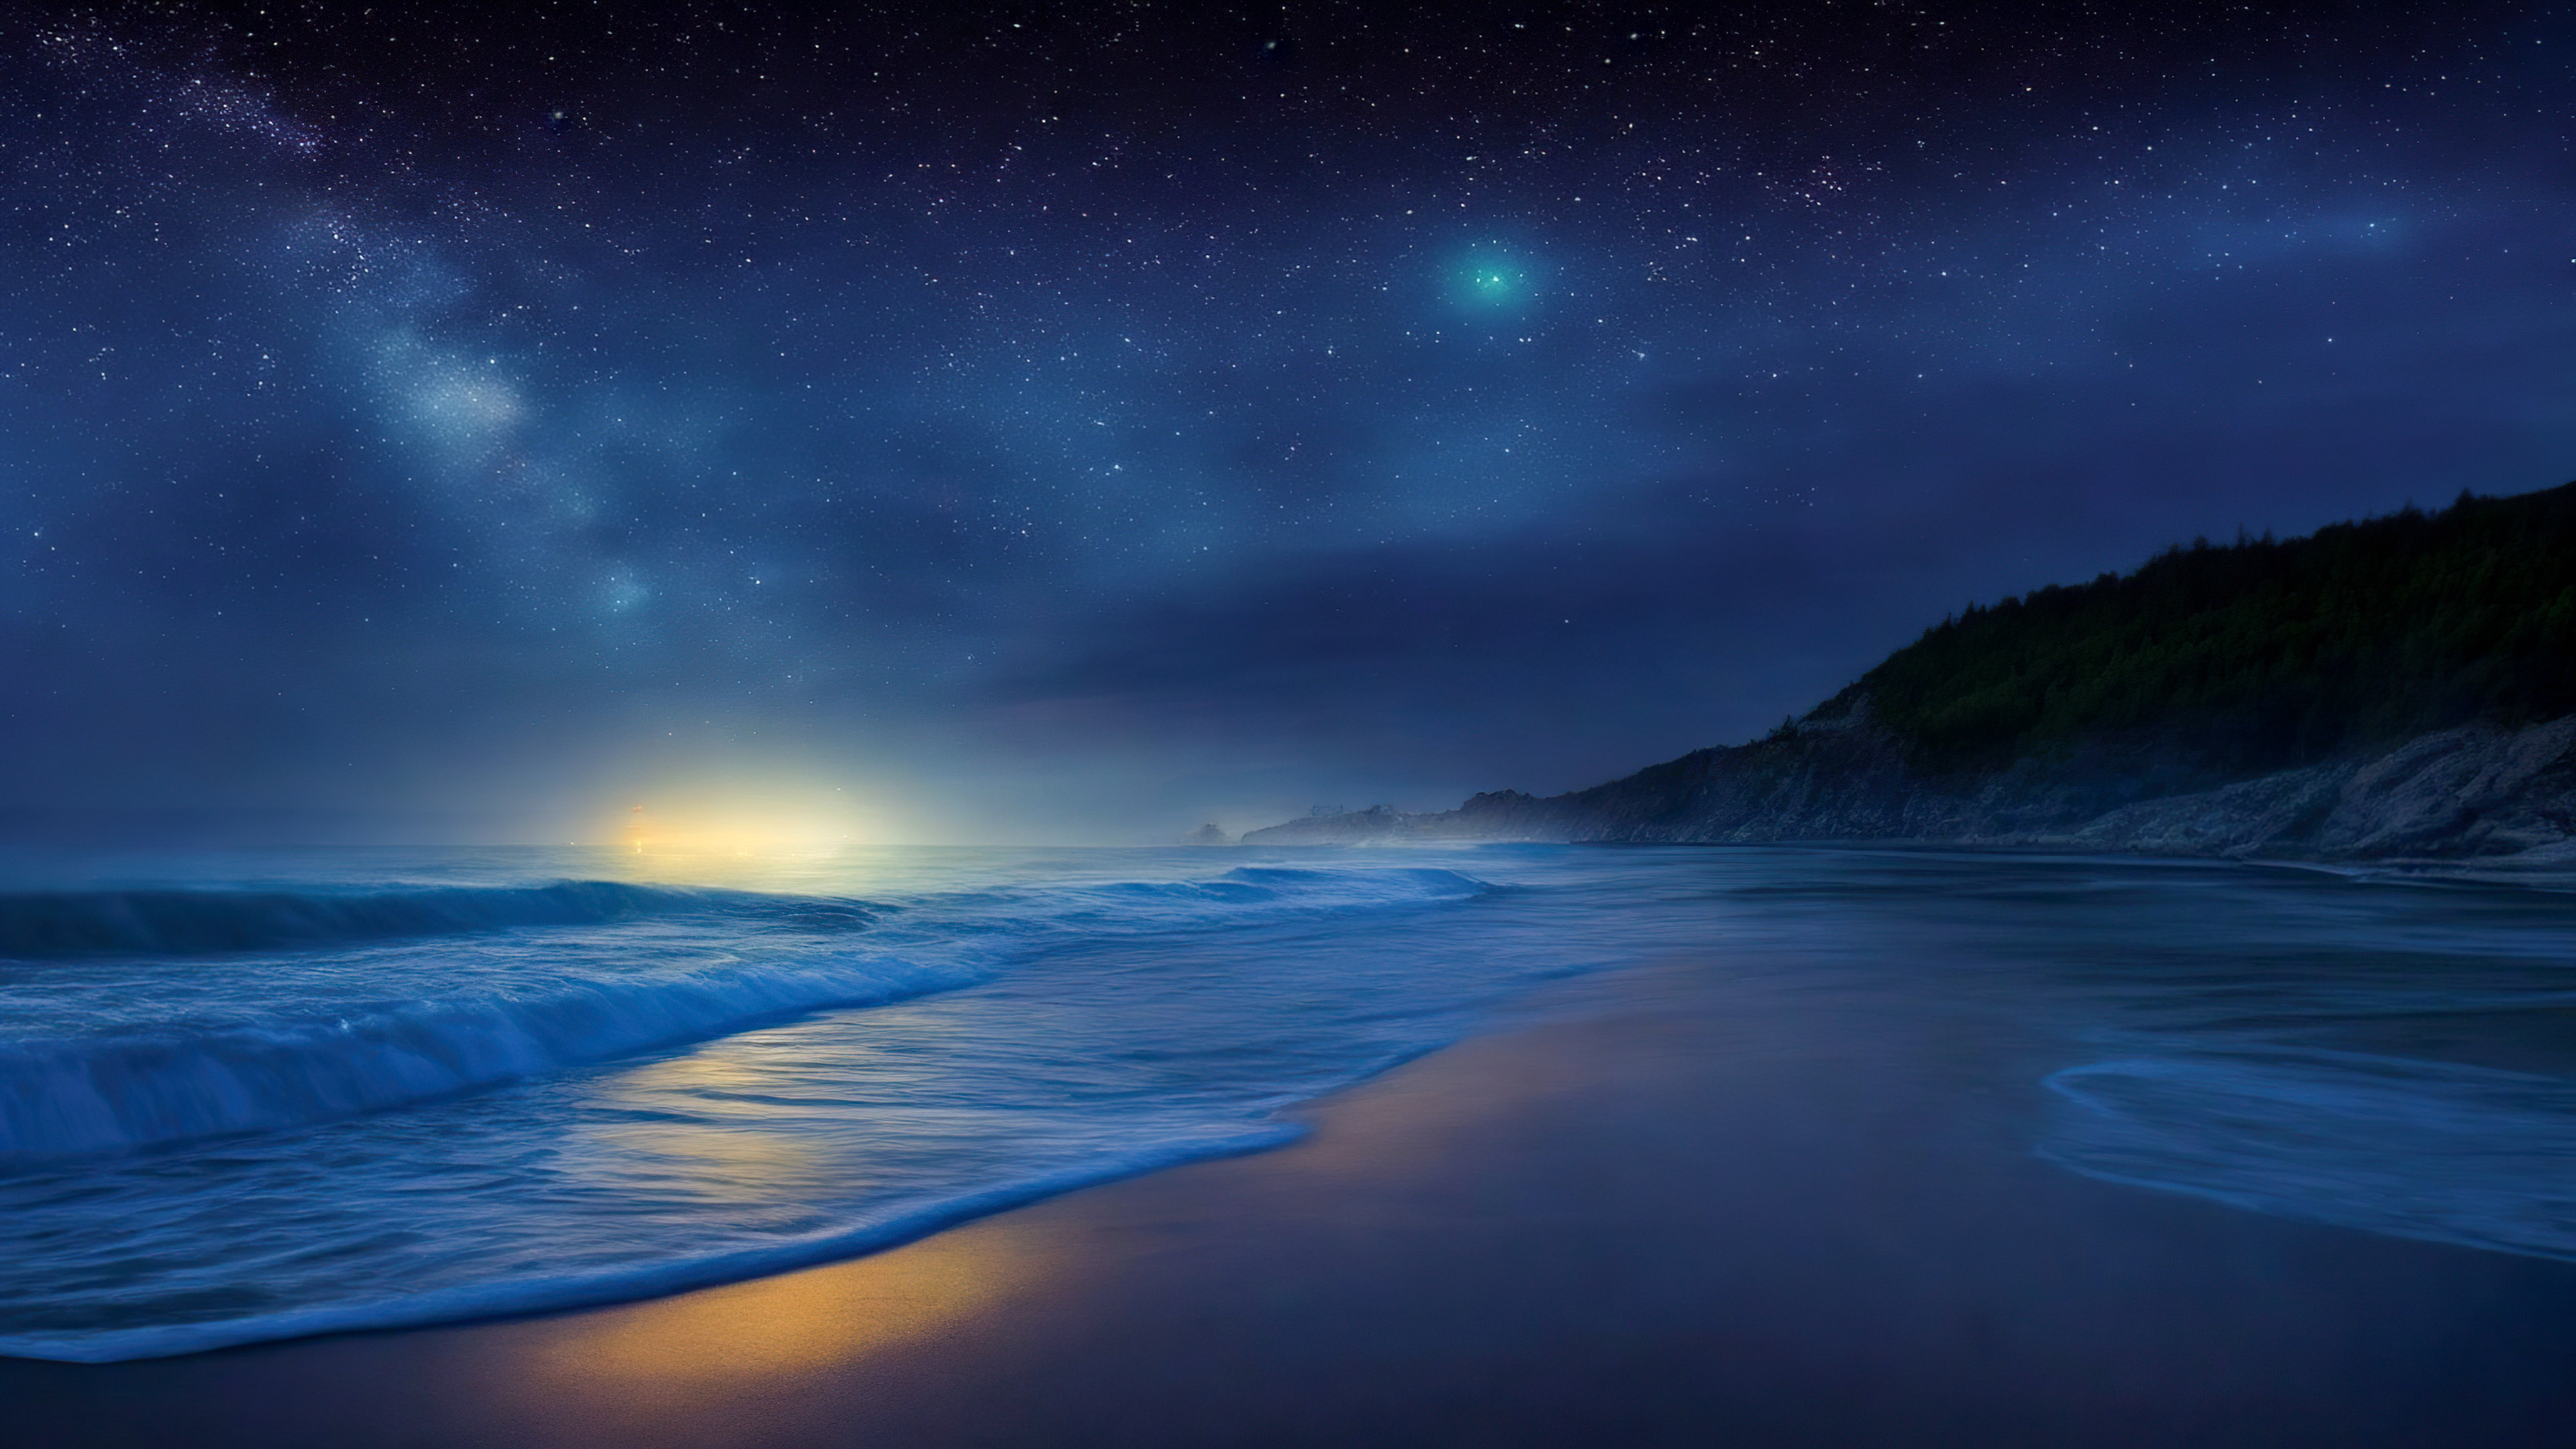 Téléchargez notre arrière-plan, capturant une plage éloignée la nuit, où les vagues rencontrent le rivage sous une toile d'étoiles scintillantes.